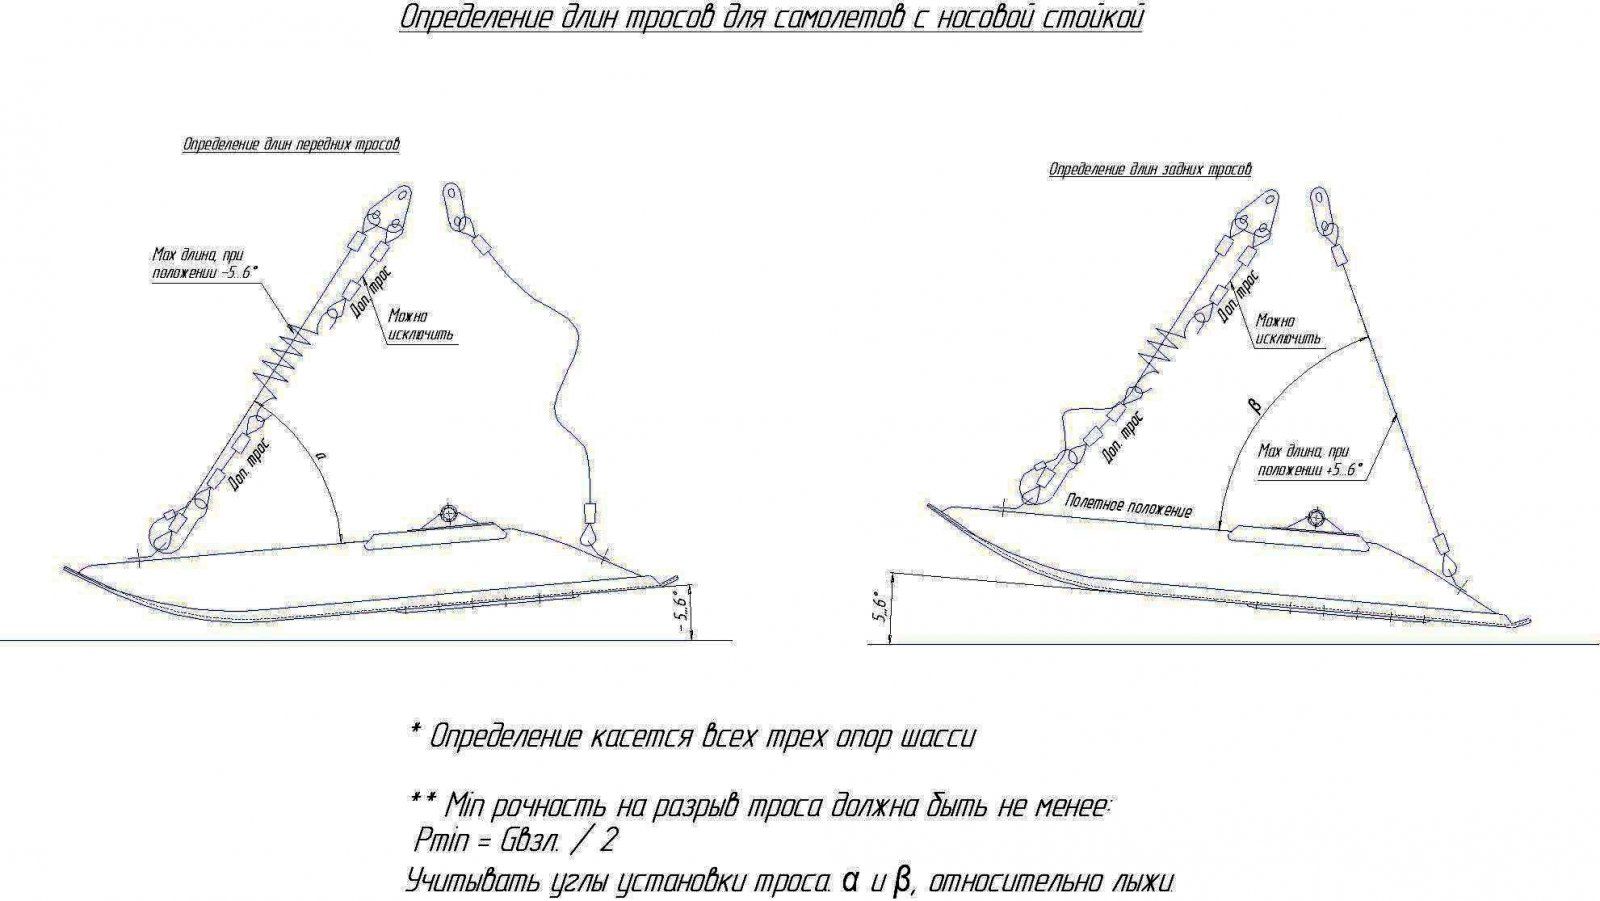 Определение параметров тросов на лыжах , у самолетов с носовой стойкой.jpg